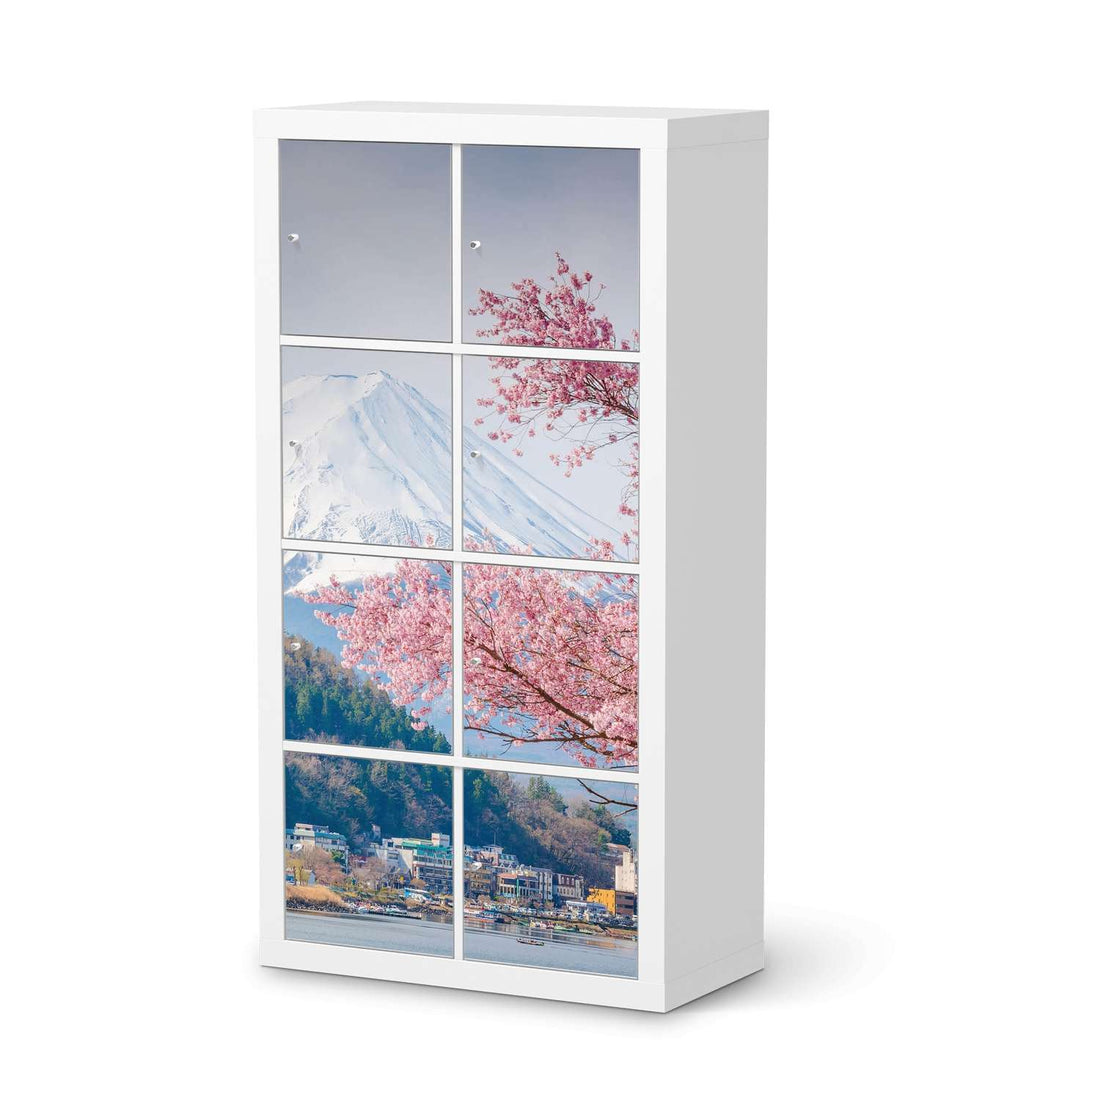 Klebefolie Mount Fuji - IKEA Expedit Regal 8 Türen  - weiss